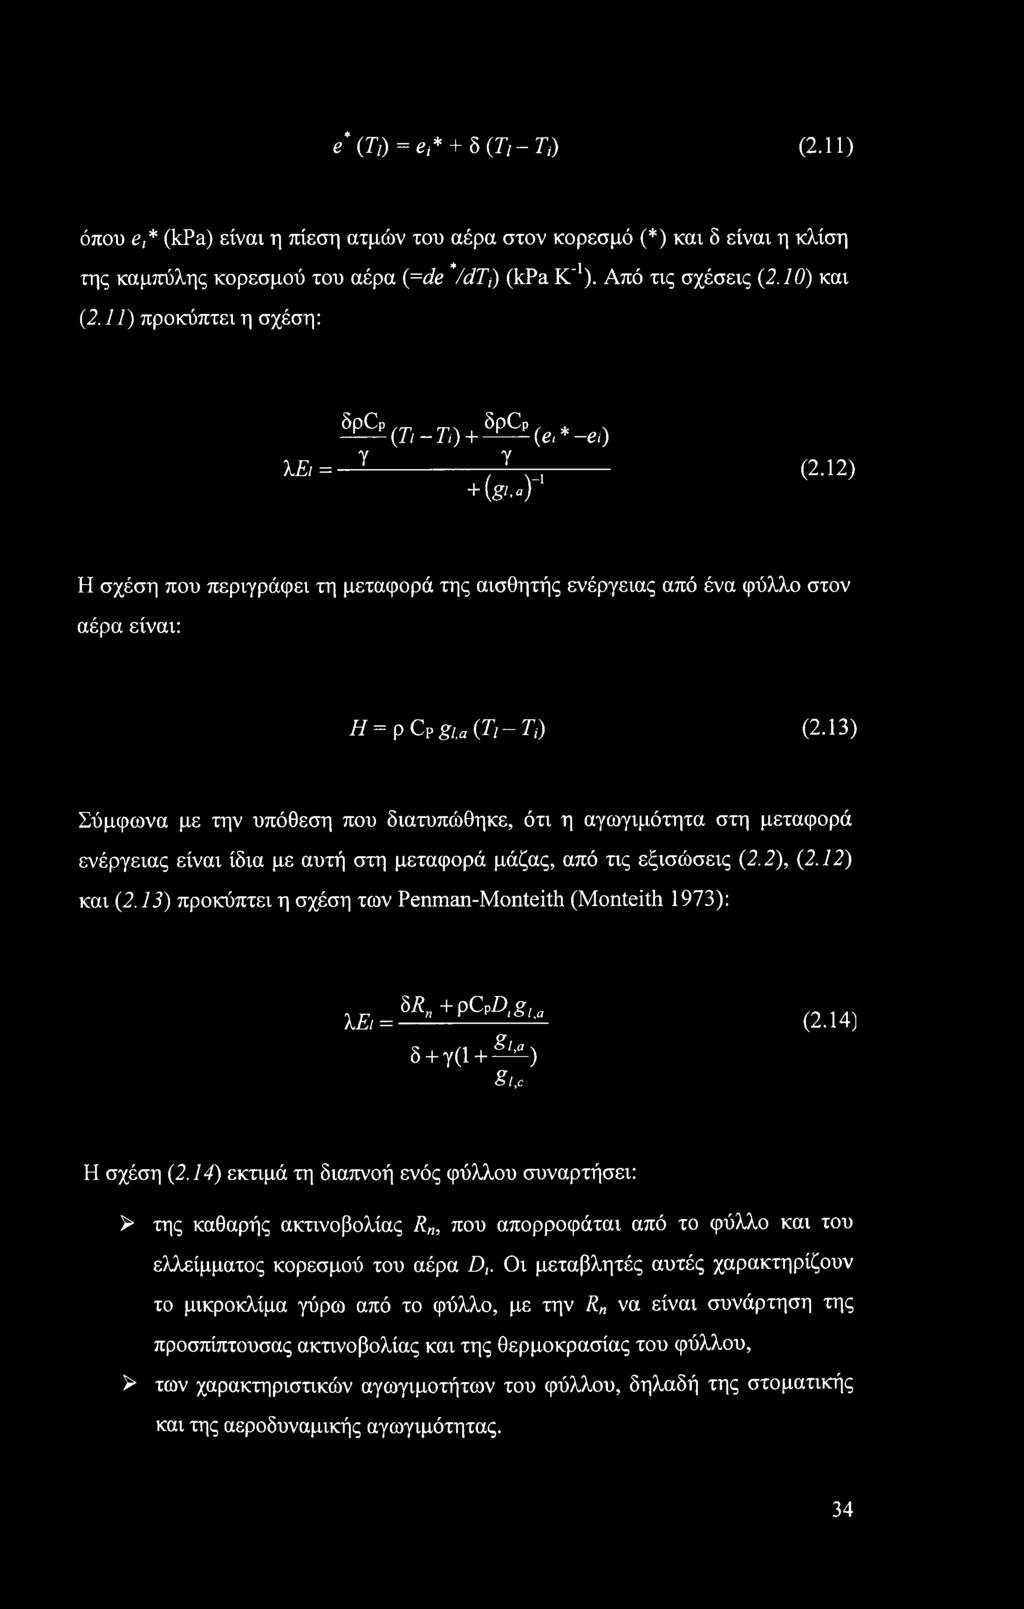 13) Σύμφωνα με την υπόθεση που διατυπώθηκε, ότι η αγωγιμότητα στη μεταφορά ενέργειας είναι ίδια με αυτή στη μεταφορά μάζας, από τις εξισώσεις (2.2), (2.12) και (2.